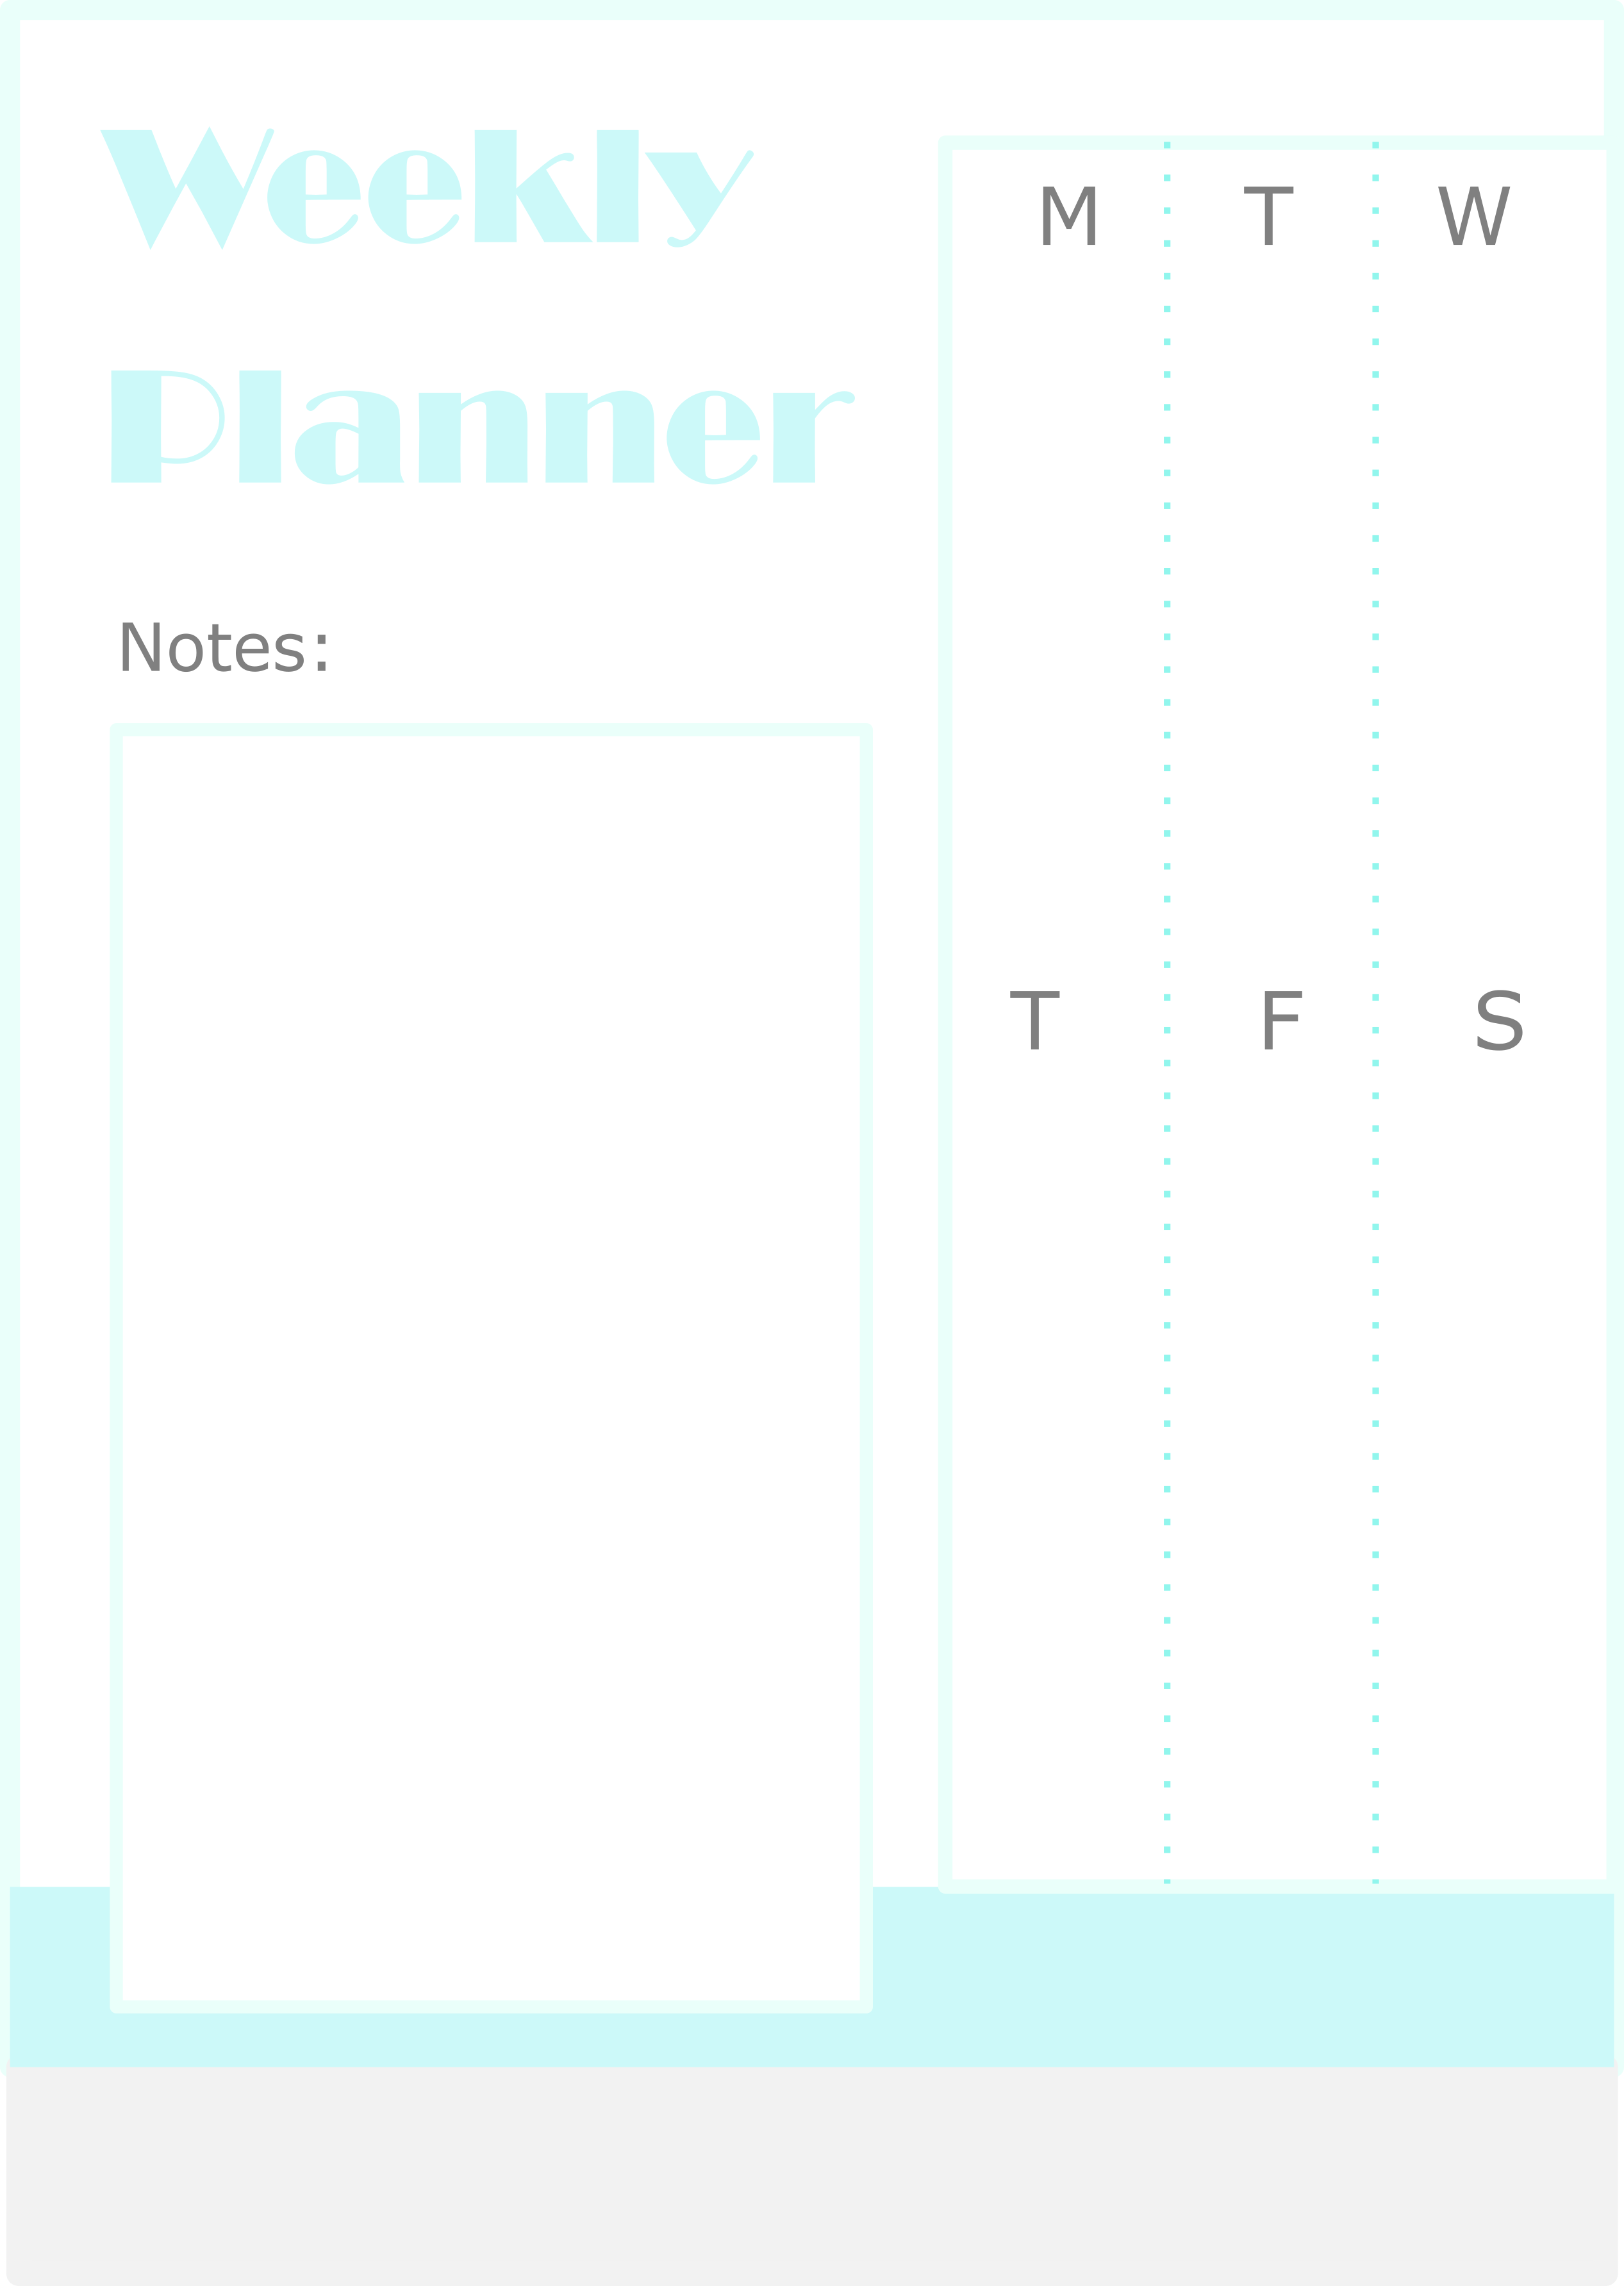 jadwal kegiatan mingguan kosong (template)